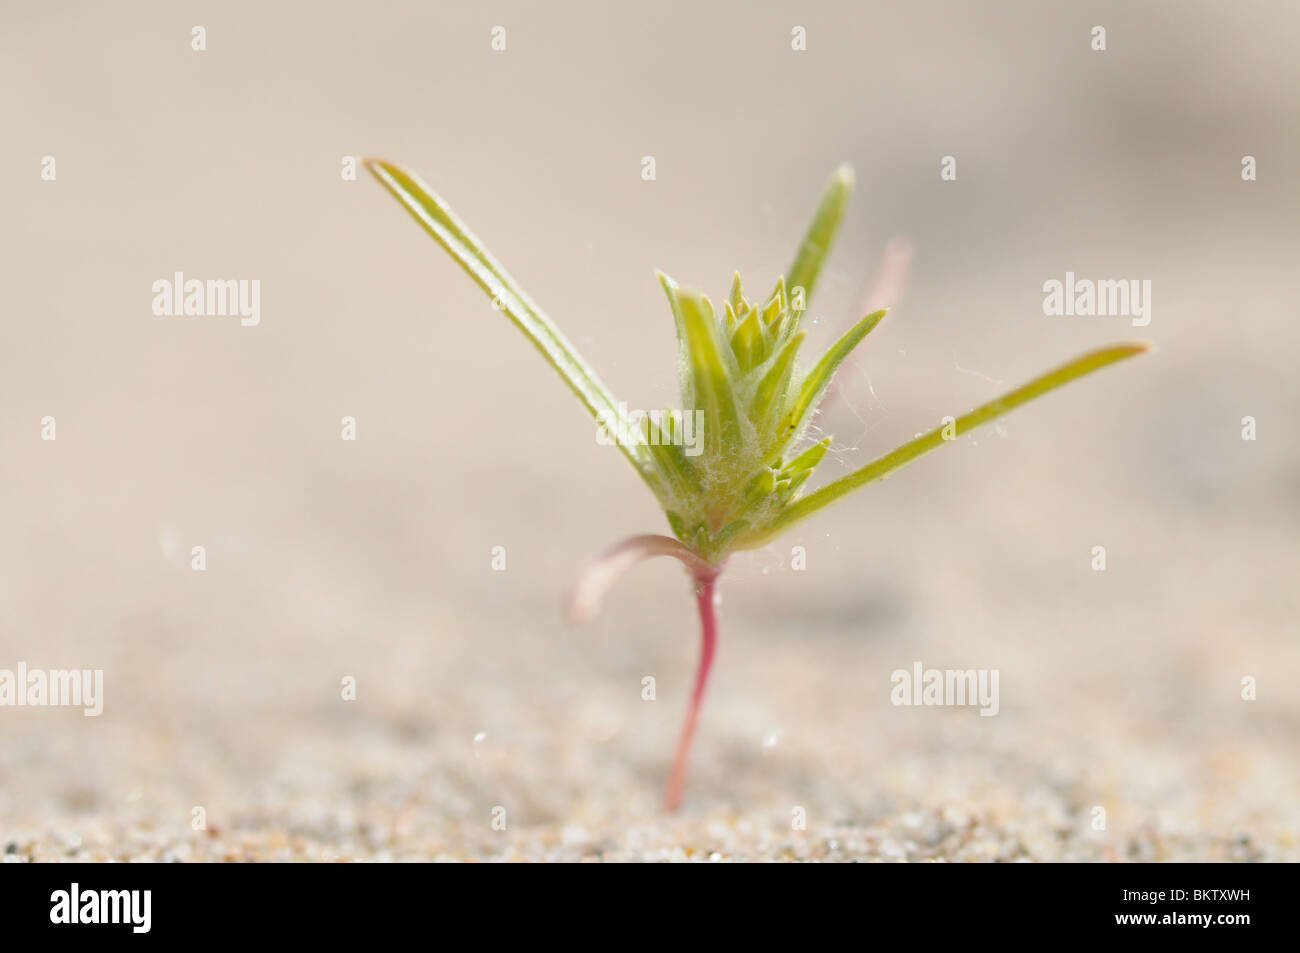 Kiemplant van Smal Vlieszaad op een zandstrandje van de Rijn; Young plant of the Siberian bugseed growing on a sandy beach of the river Rhine Stock Photo